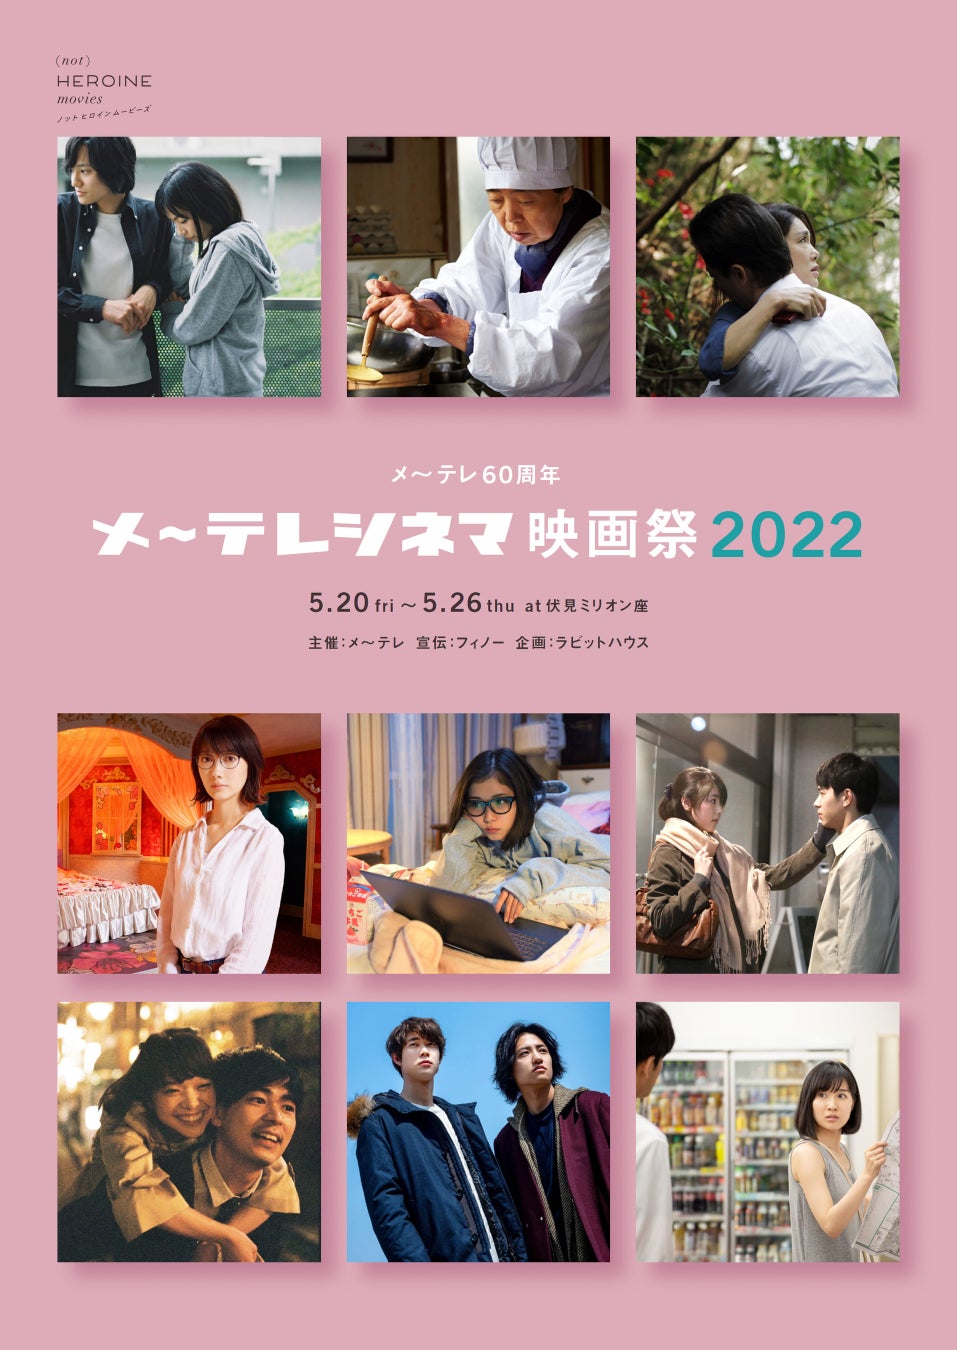 メ～テレがこれまでに製作した劇場映画の一部を再上映！「メ～テレ60周年 メ～テレシネマ映画祭2022」 5月開催 ～日本を代表する監督によるティーン向け映画ワークショップも～